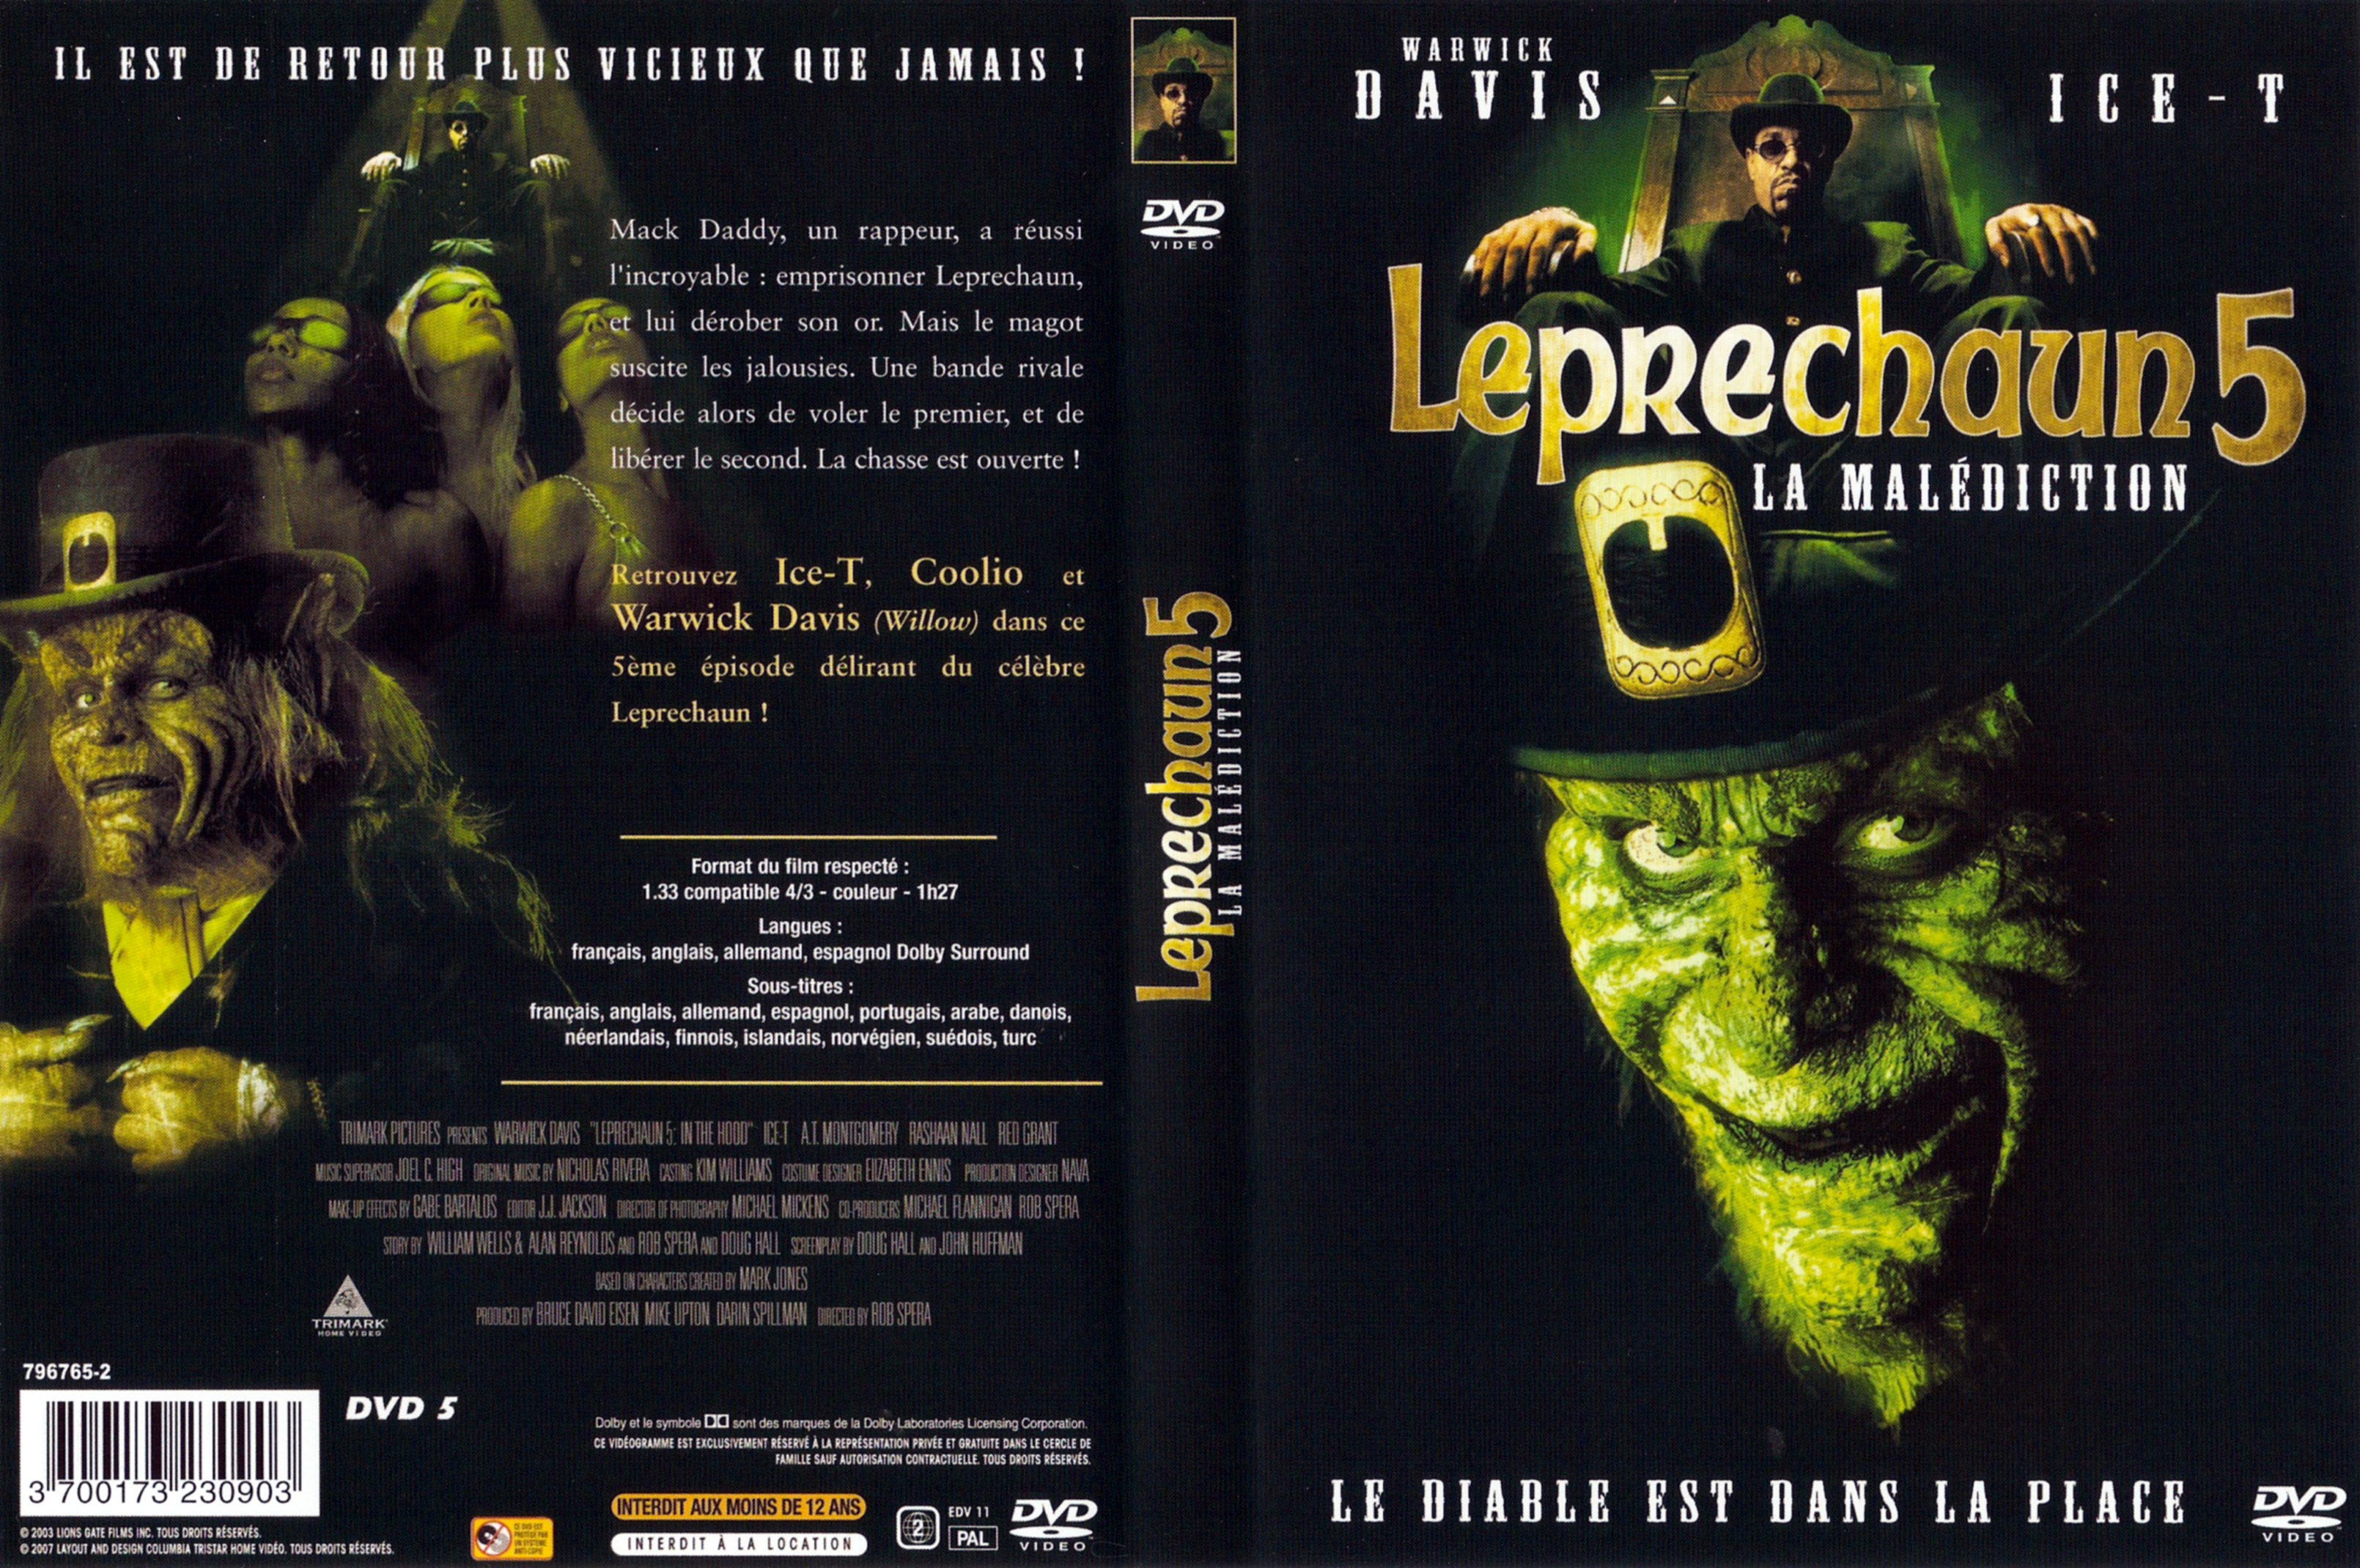 Jaquette DVD Leprechaun 5 - La malediction